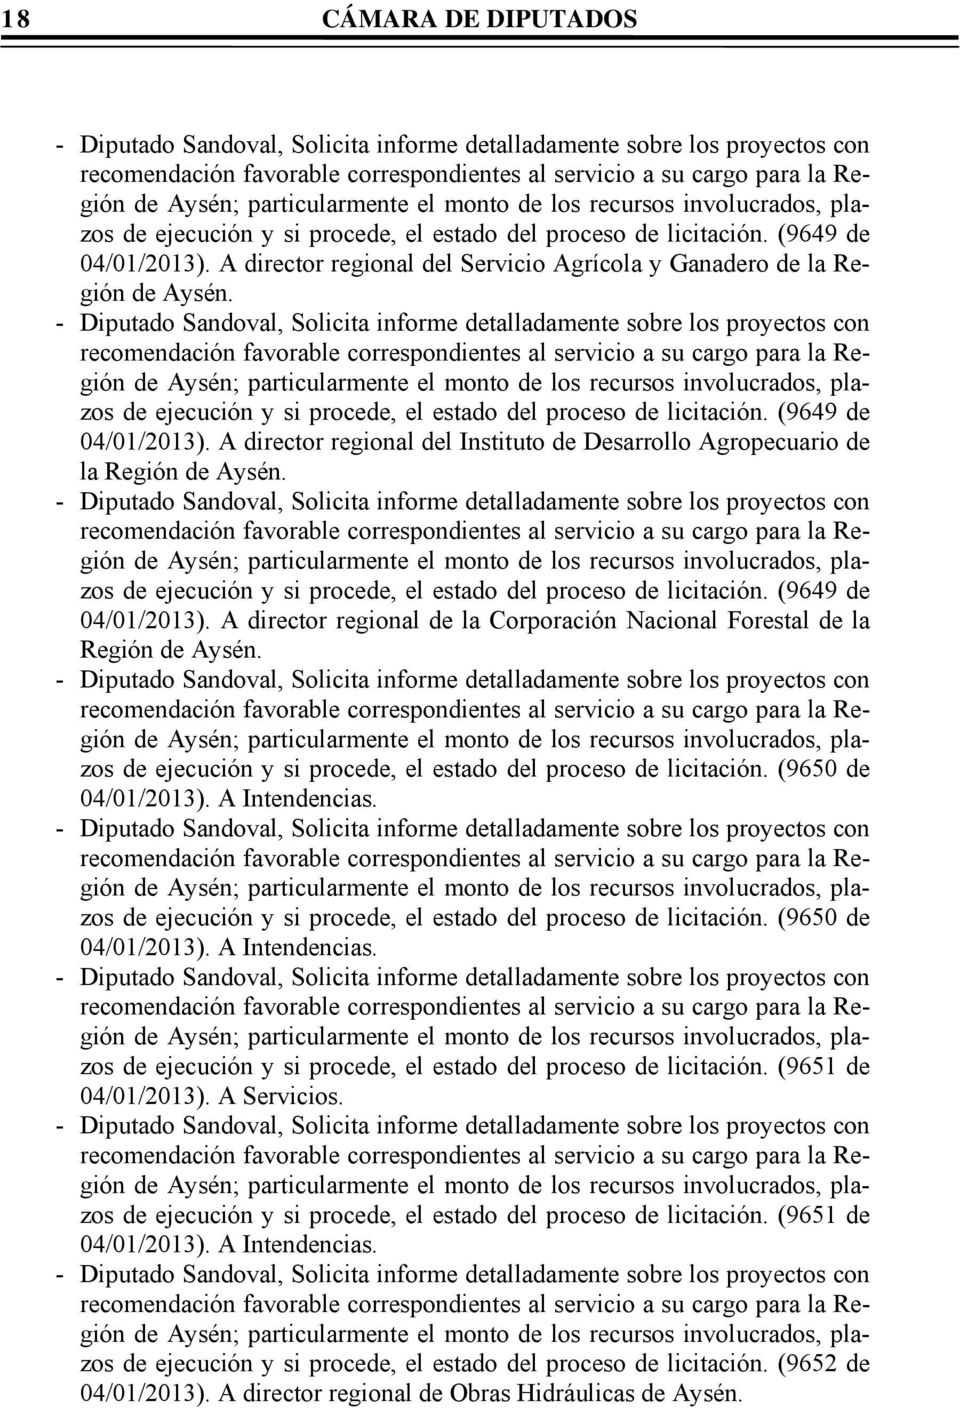 - Diputado Sandoval, Solicita informe detalladamente sobre los proyectos con recomendación favorable correspondientes al servicio a su cargo para la Región de Aysén; particularmente el monto de los